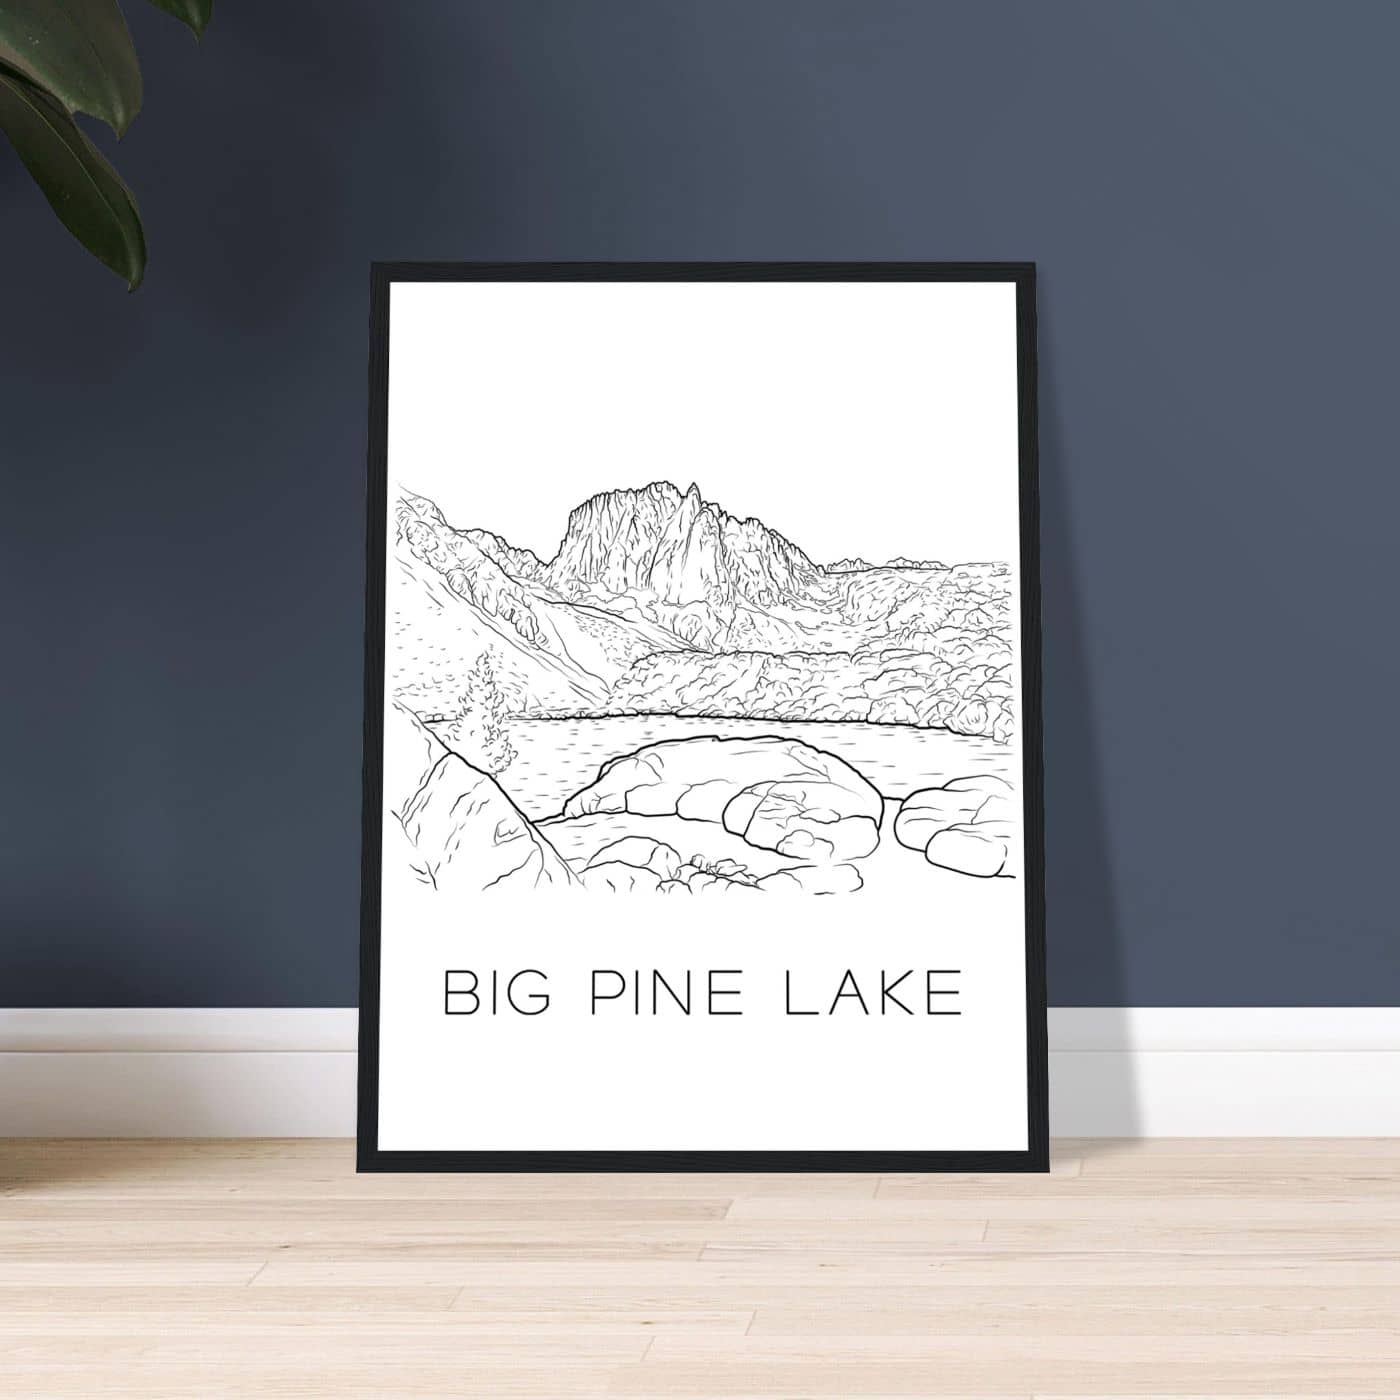 Big Pine Lake - Black & White